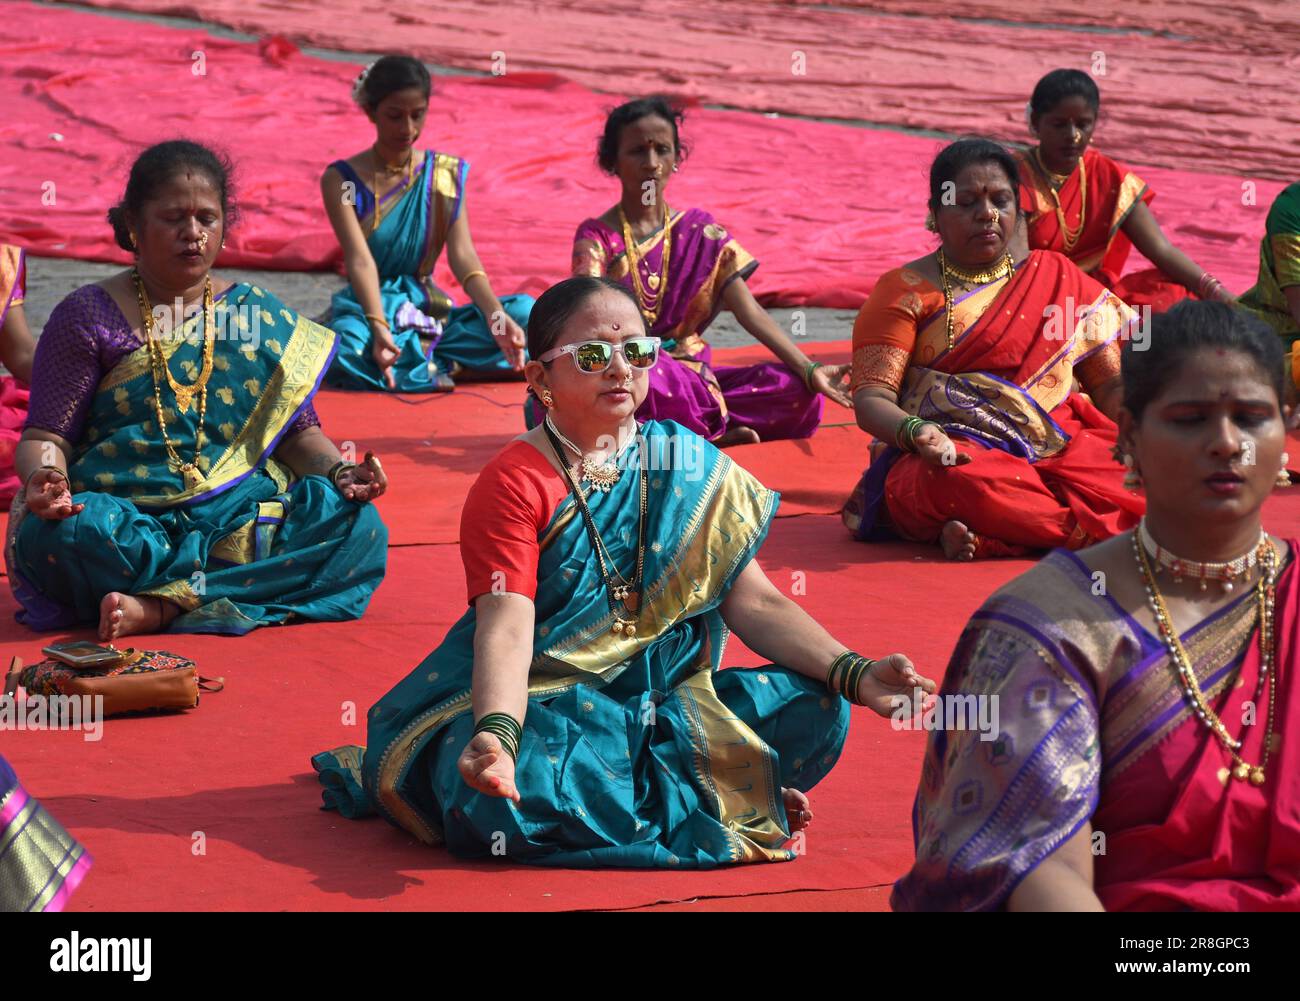 380 Nauvari Saree Images, Stock Photos & Vectors | Shutterstock